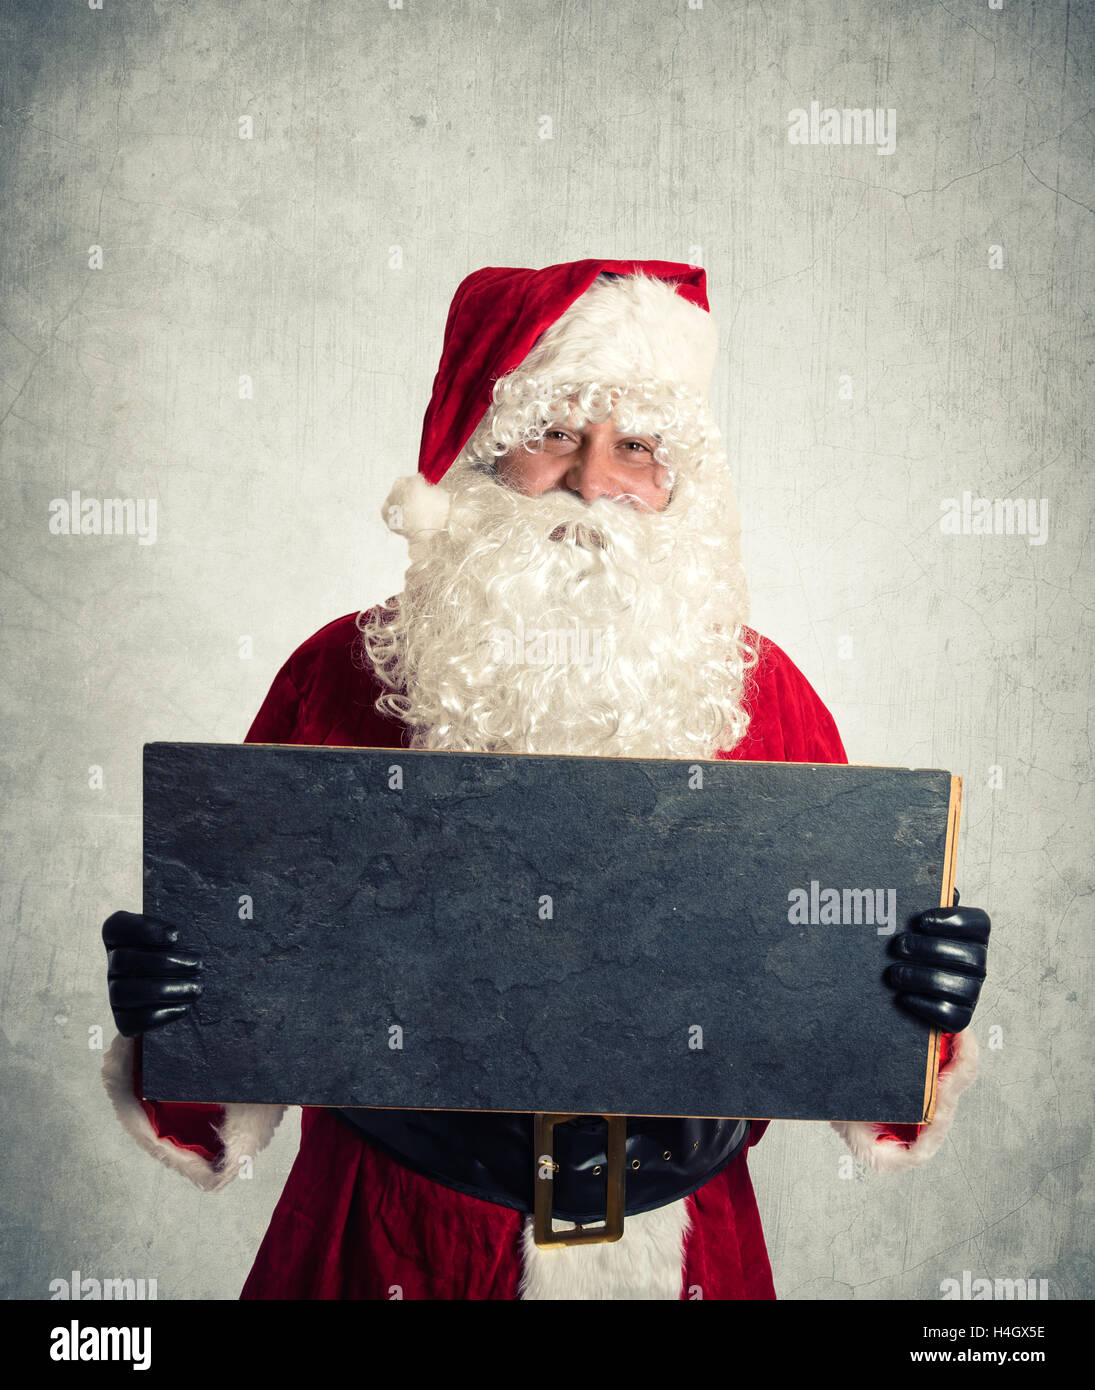 Père Noël avec chalkbord vierge tenant dans ses mains Banque D'Images